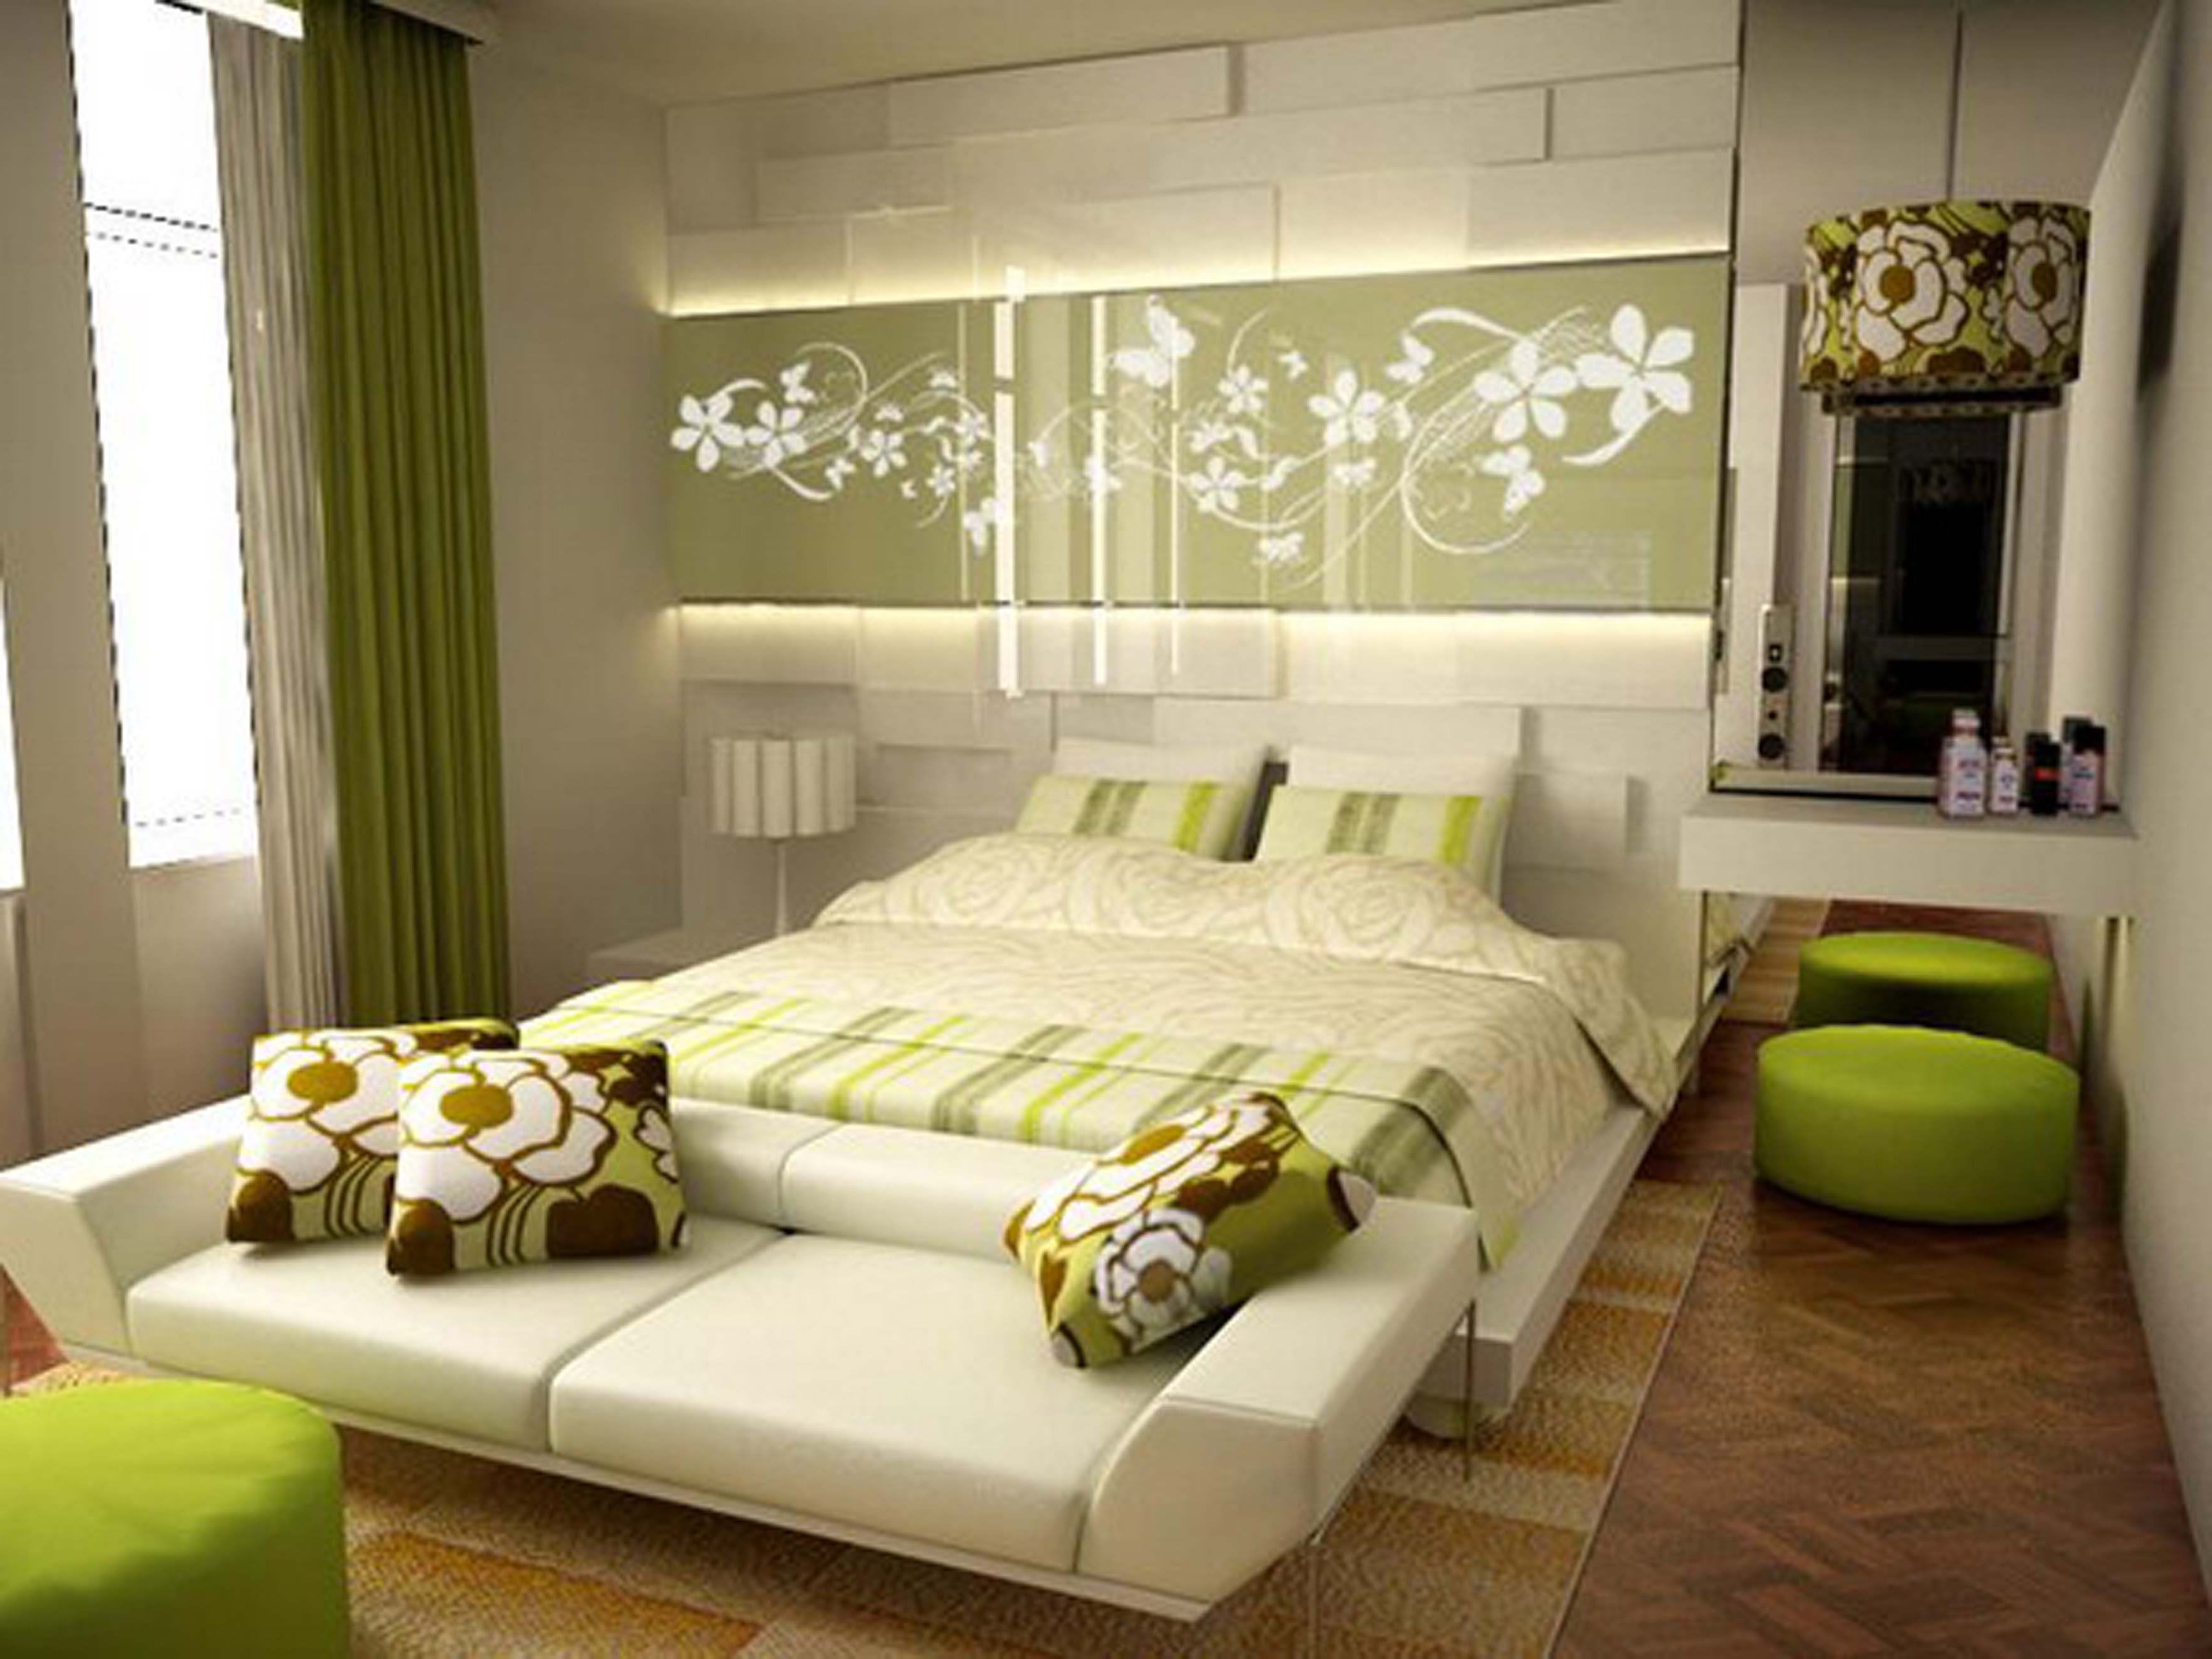 bilik tidur 9 m persegi hijau